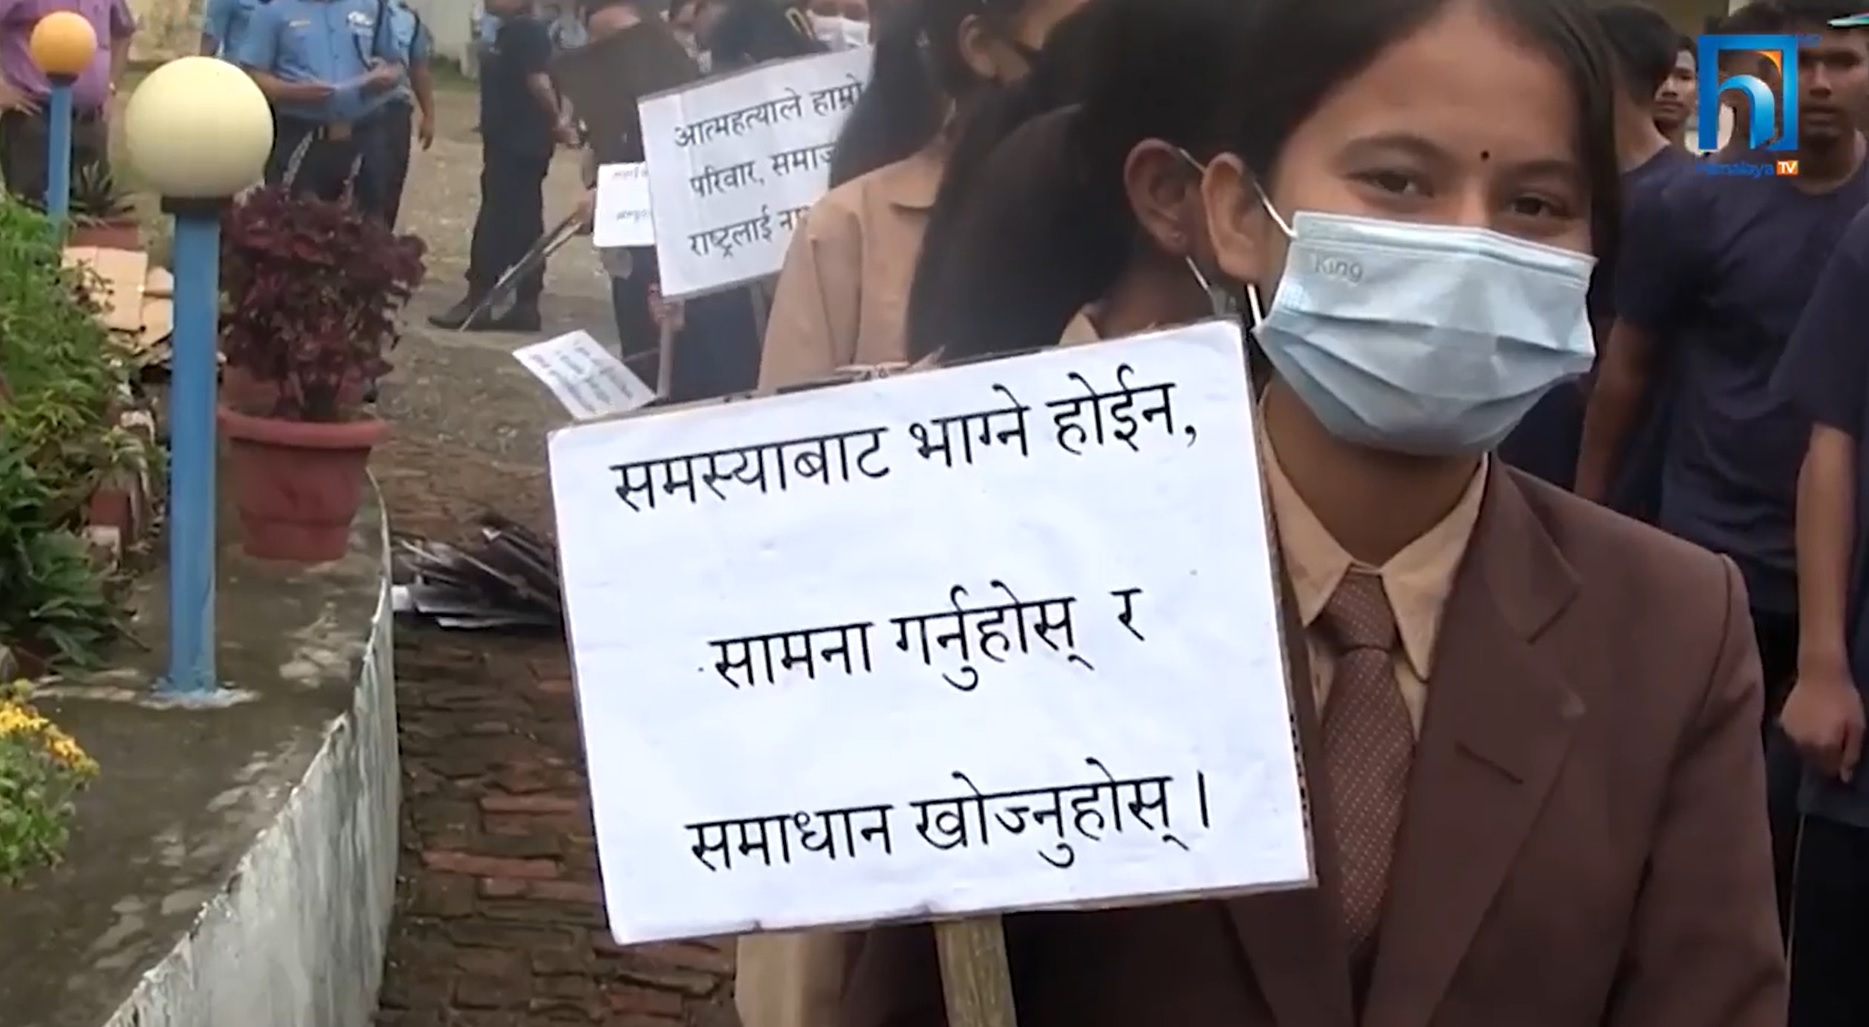 लुम्बिनी प्रदेशमा तीन वर्षमा झण्डै चार हजारले गरे आत्महत्या (भिडियो रिपोर्टसहित)